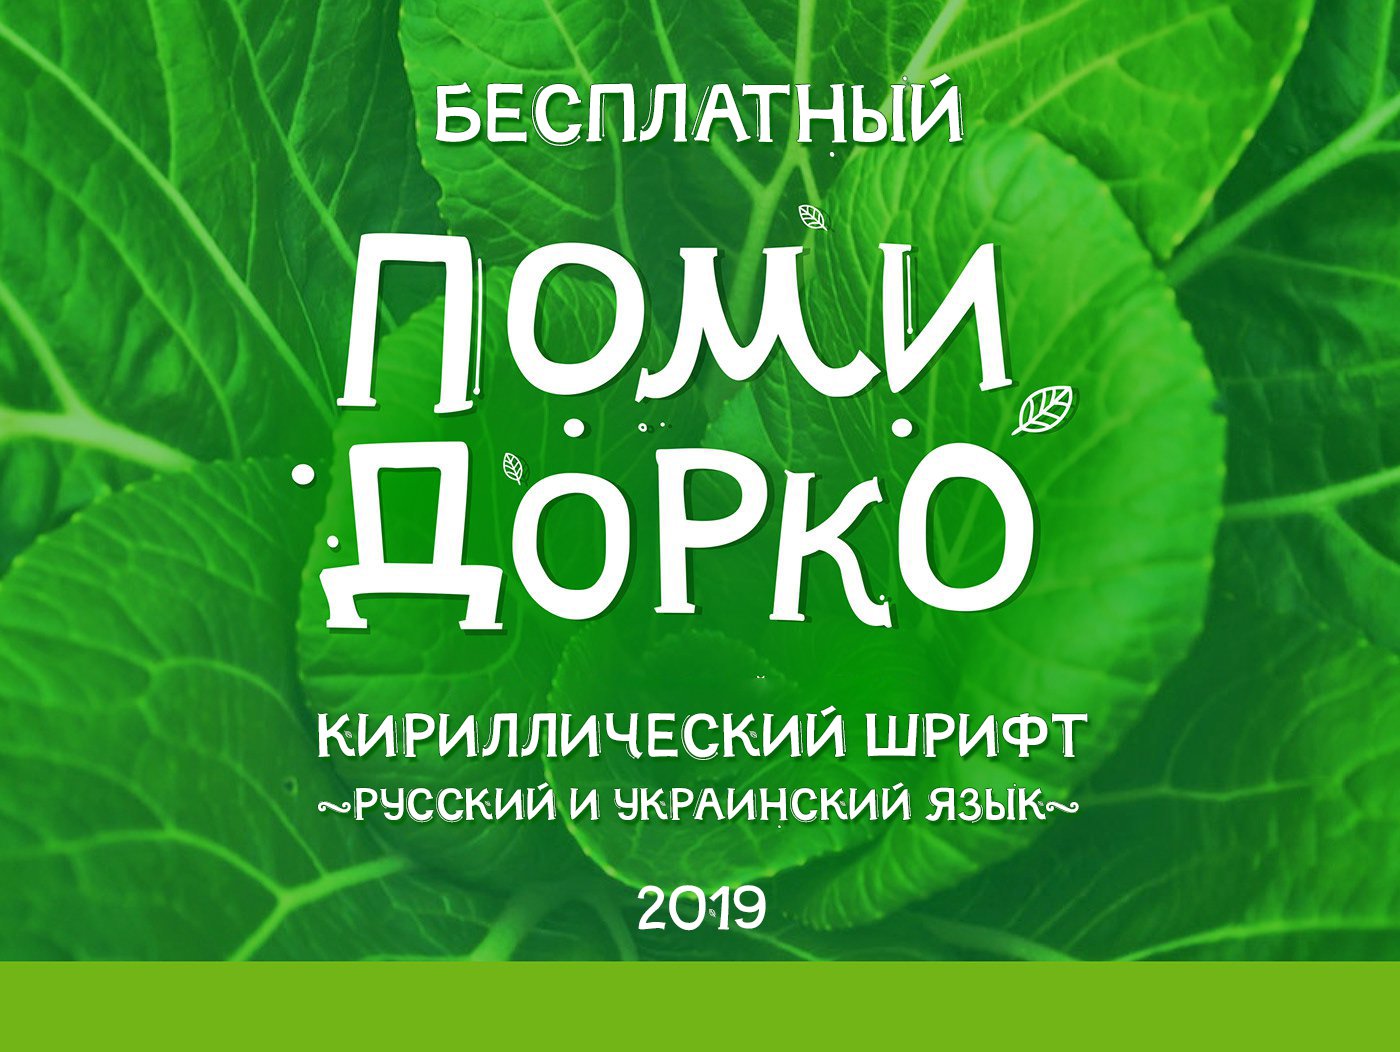 Cyrillic free font Помидорко русский шрифт скачать бесплатно